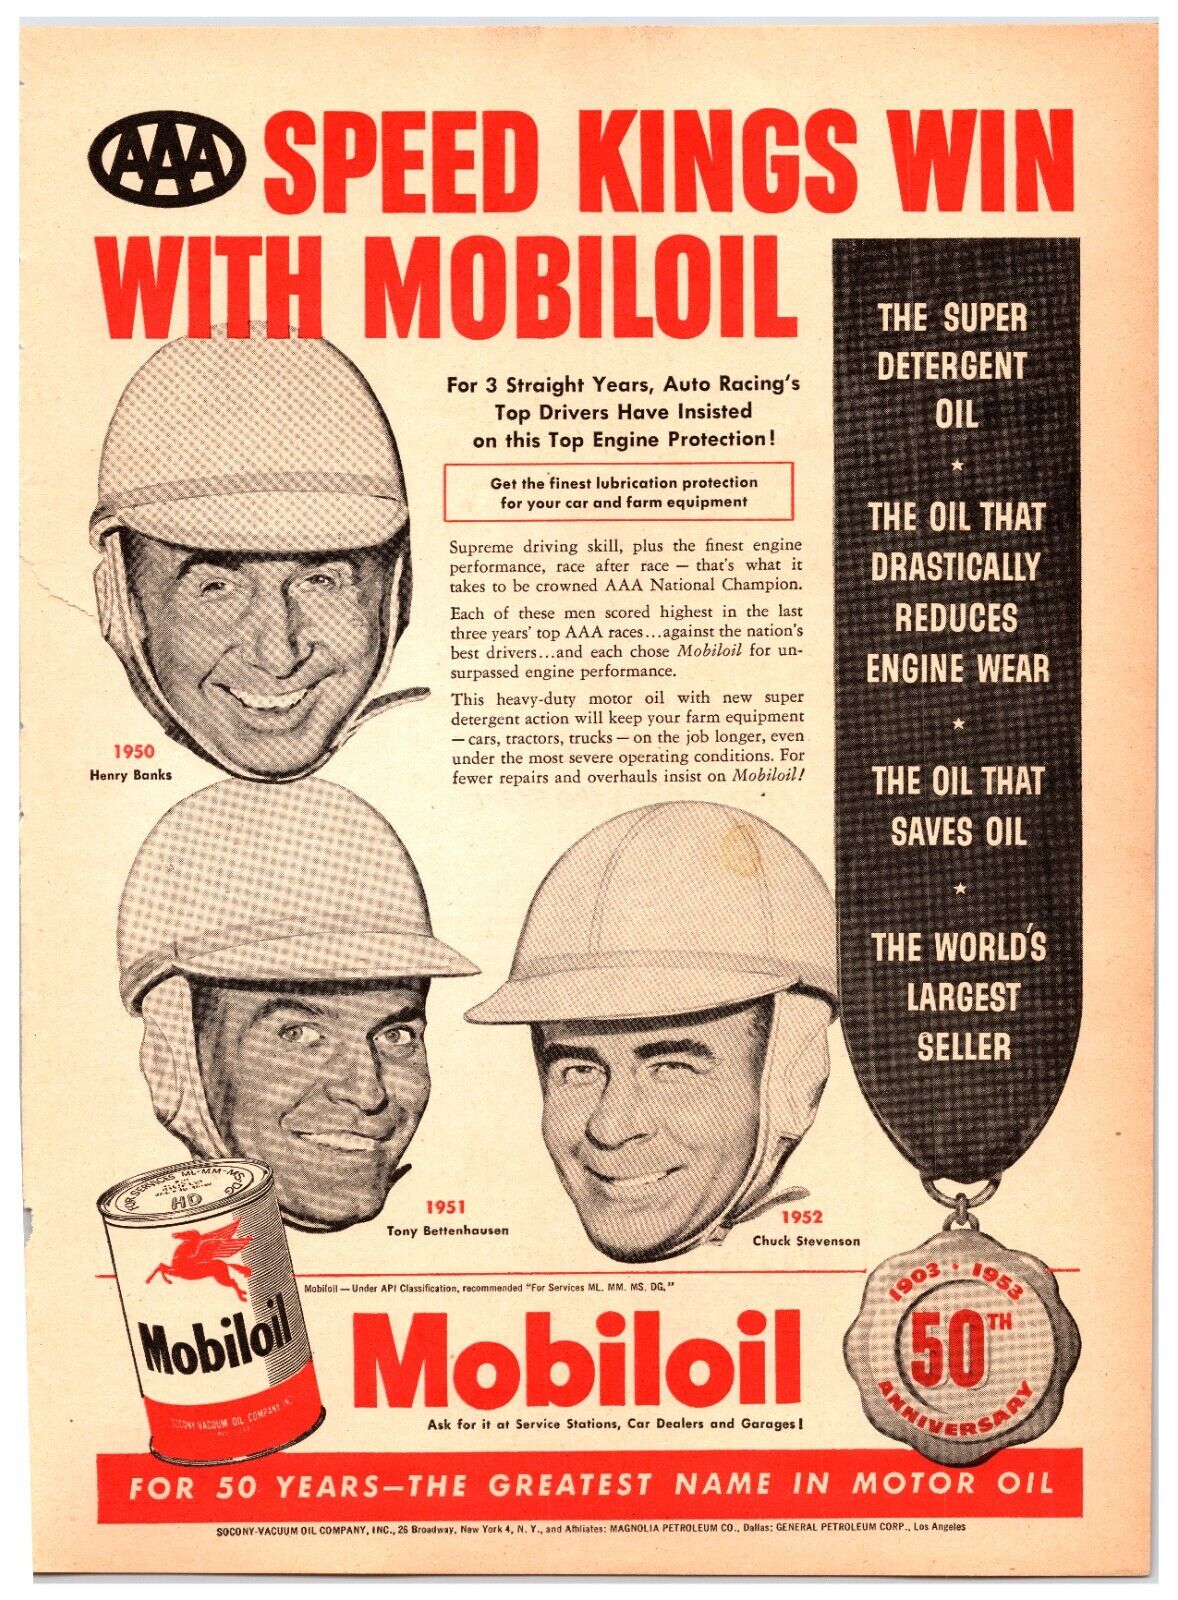 Original 1952 - Mobil Oil Speed Kings - Original Print Advertisement